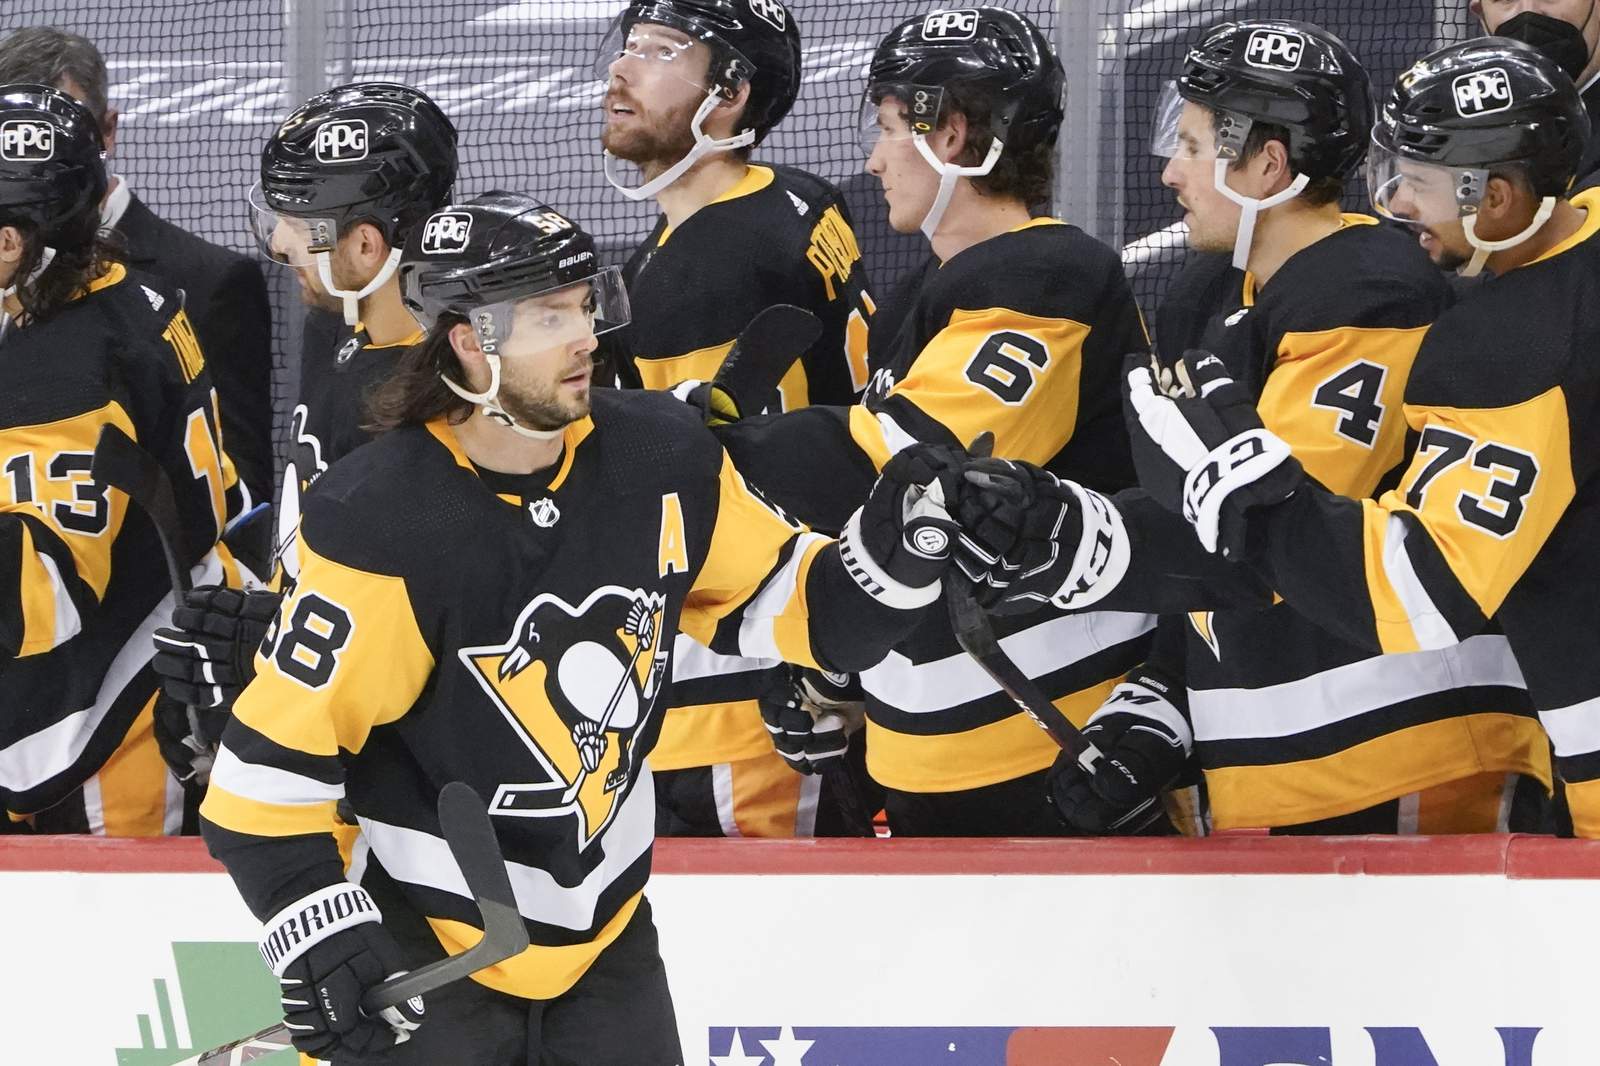 Crosby plays 1,000th game as Penguins top Islanders 3-2